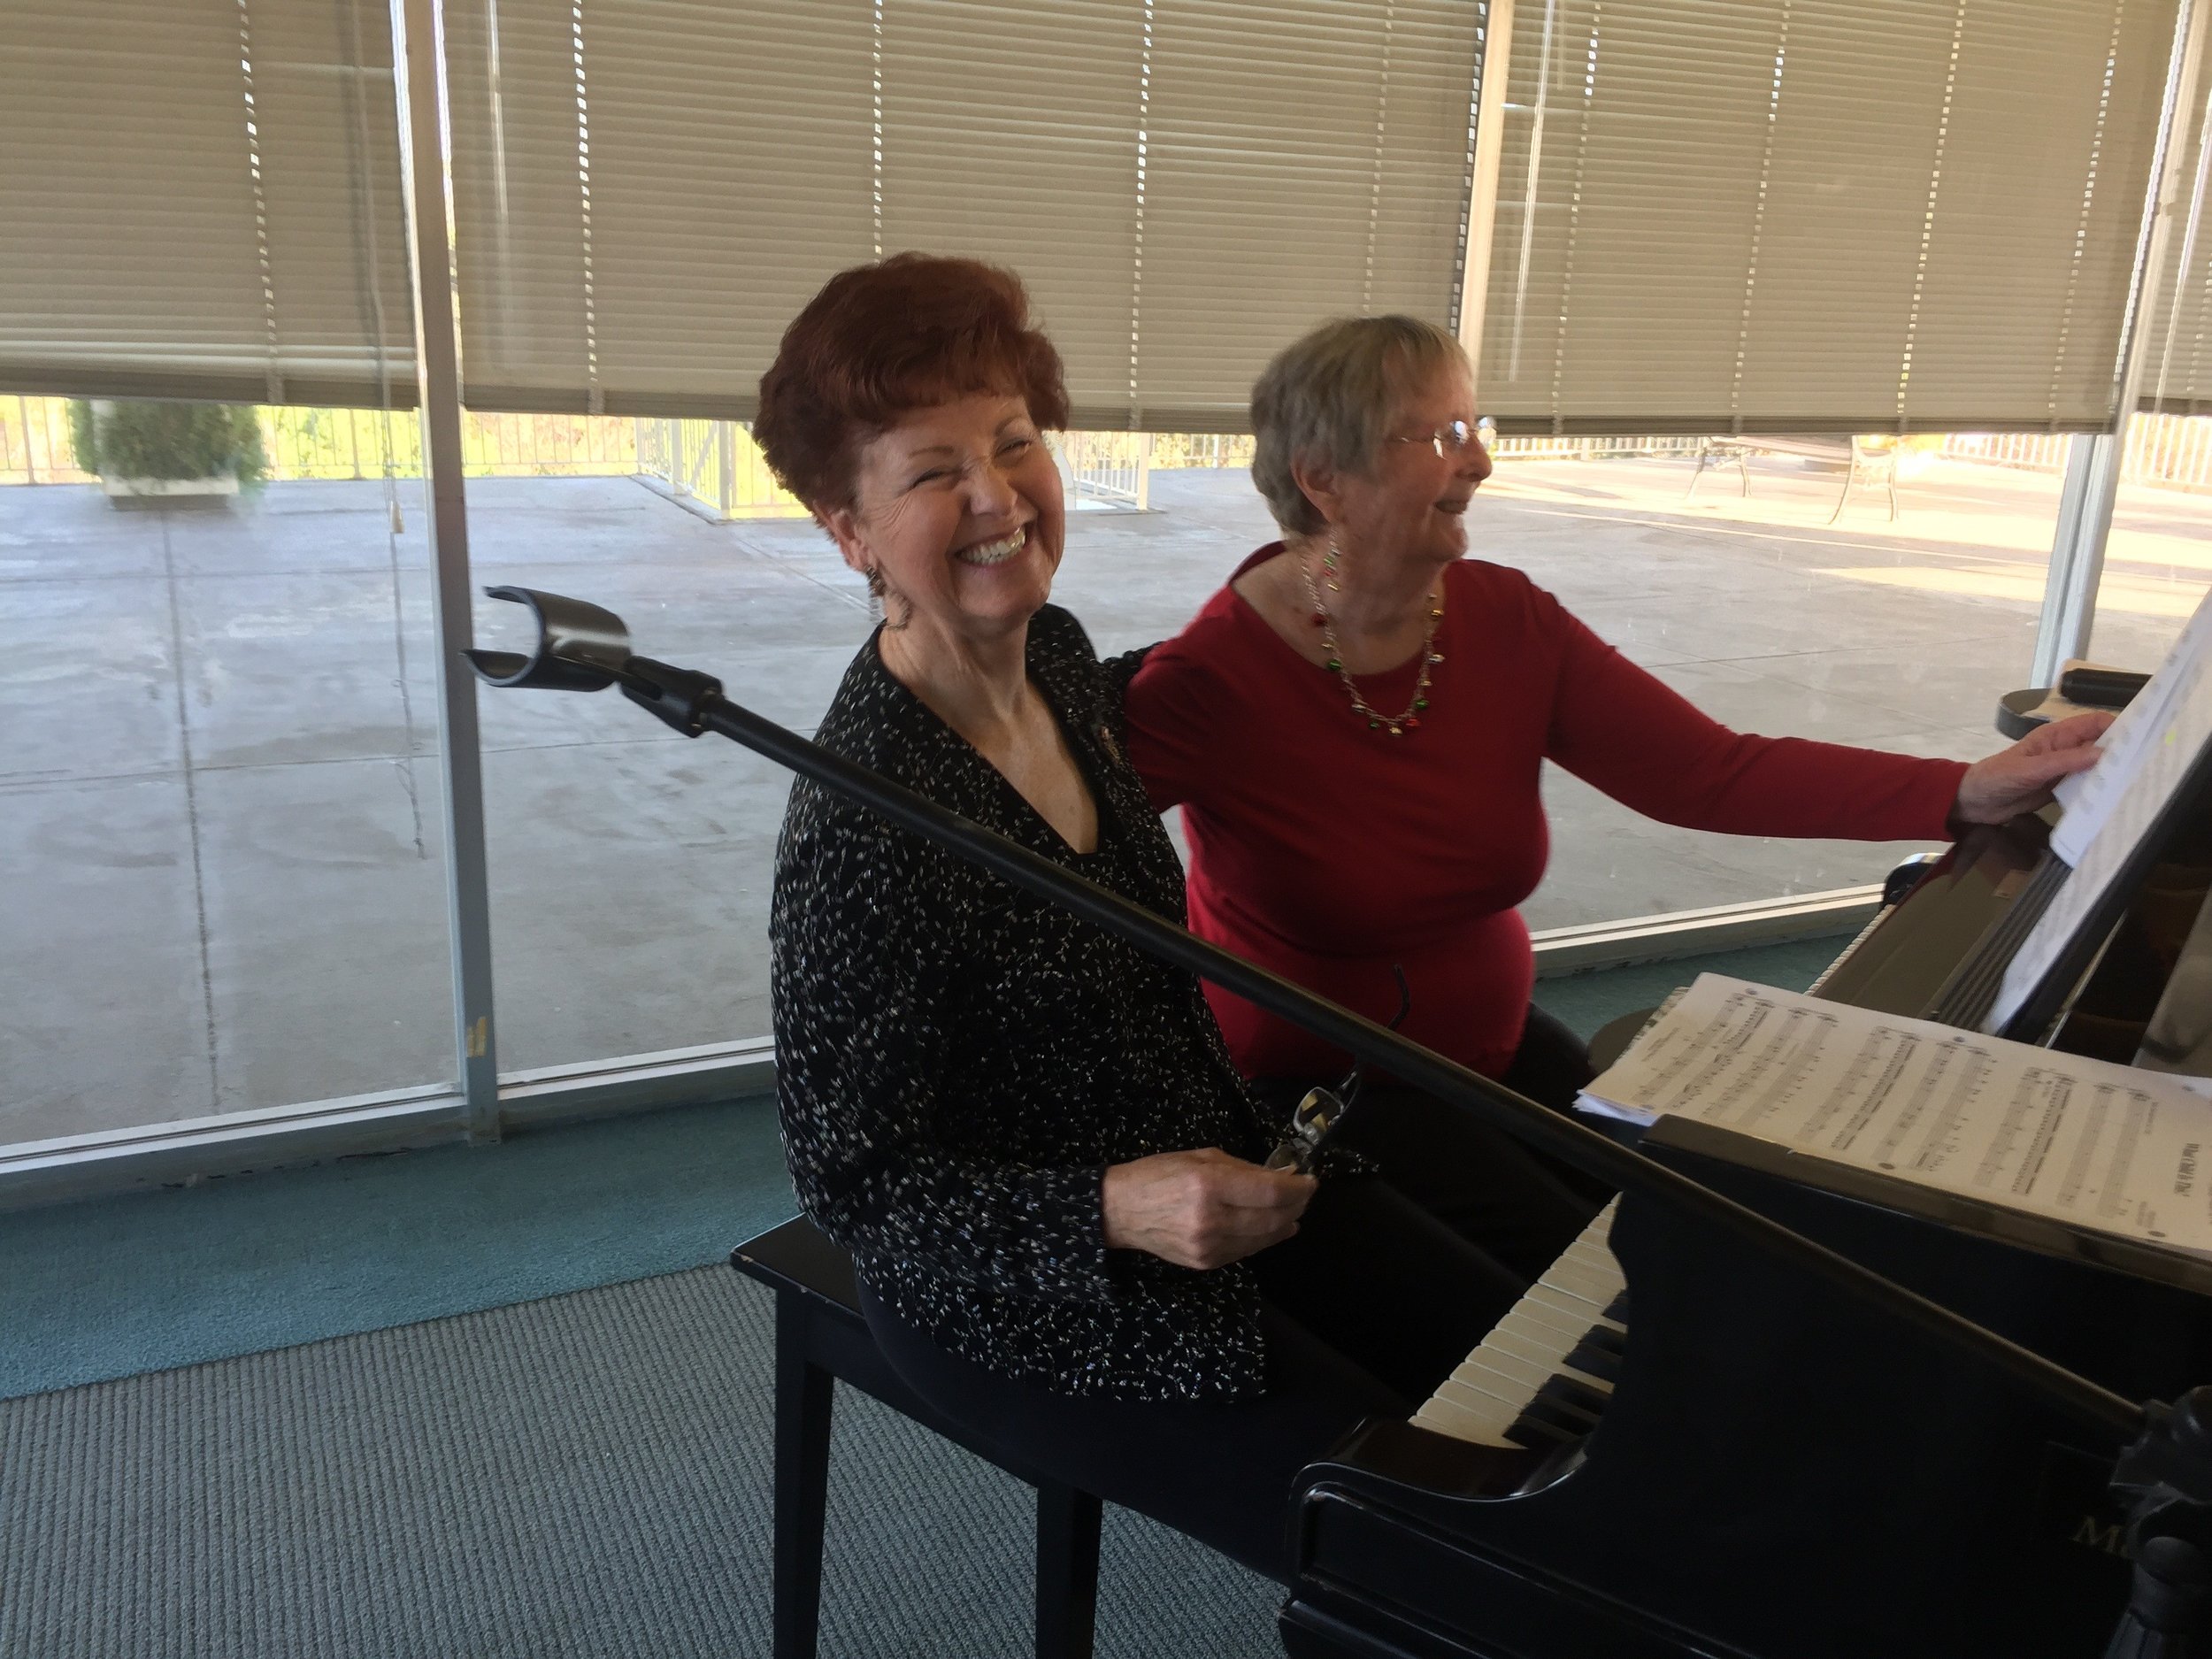 Fern Fay playing piano at Holiday Meeting